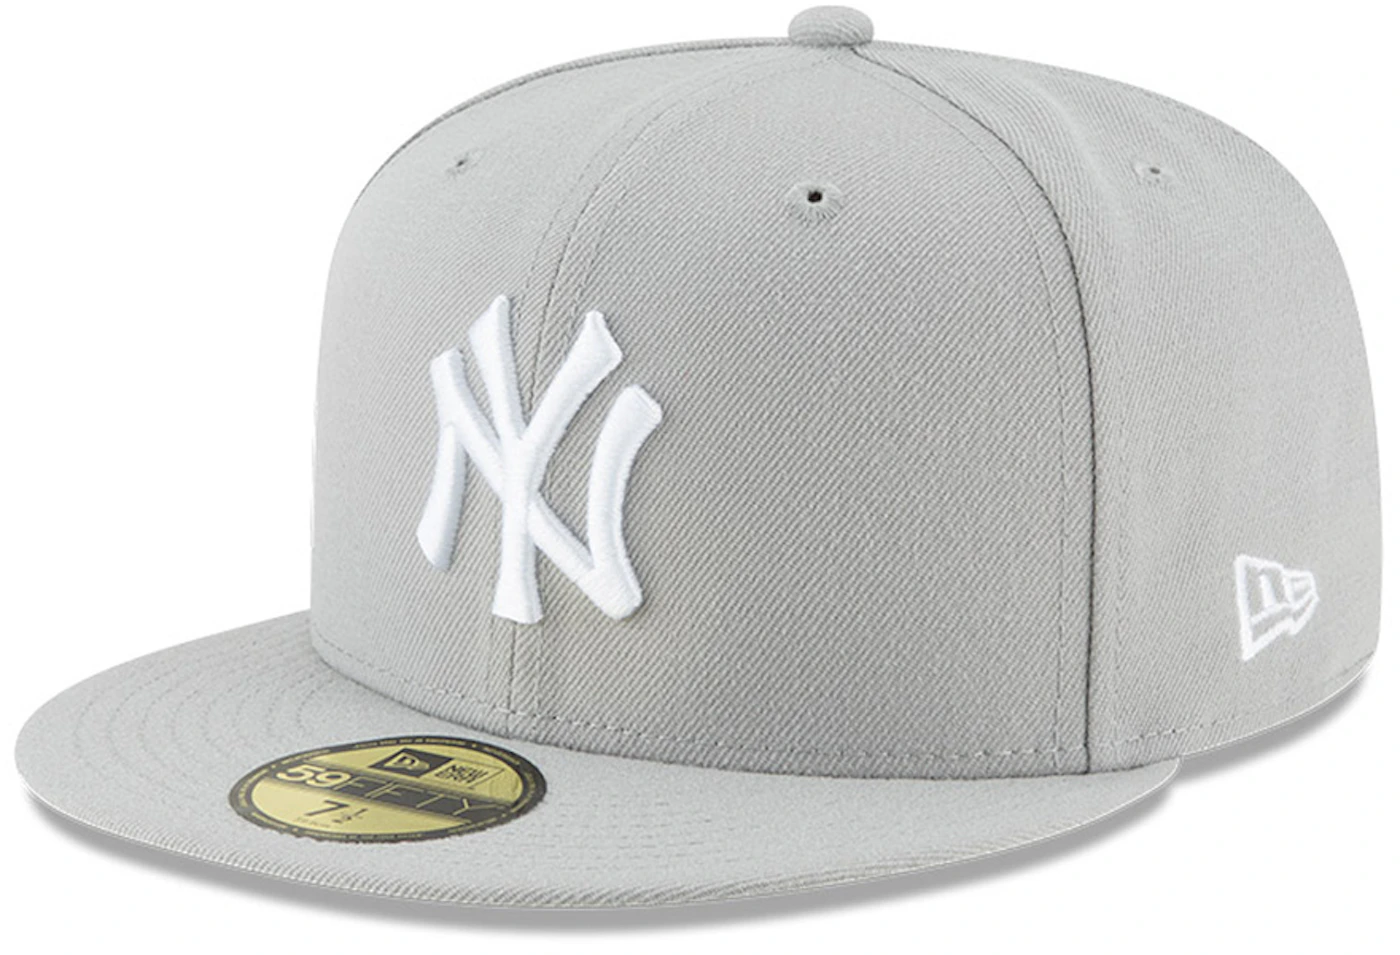 New Era - New York Yankees - All White - 8 1/4